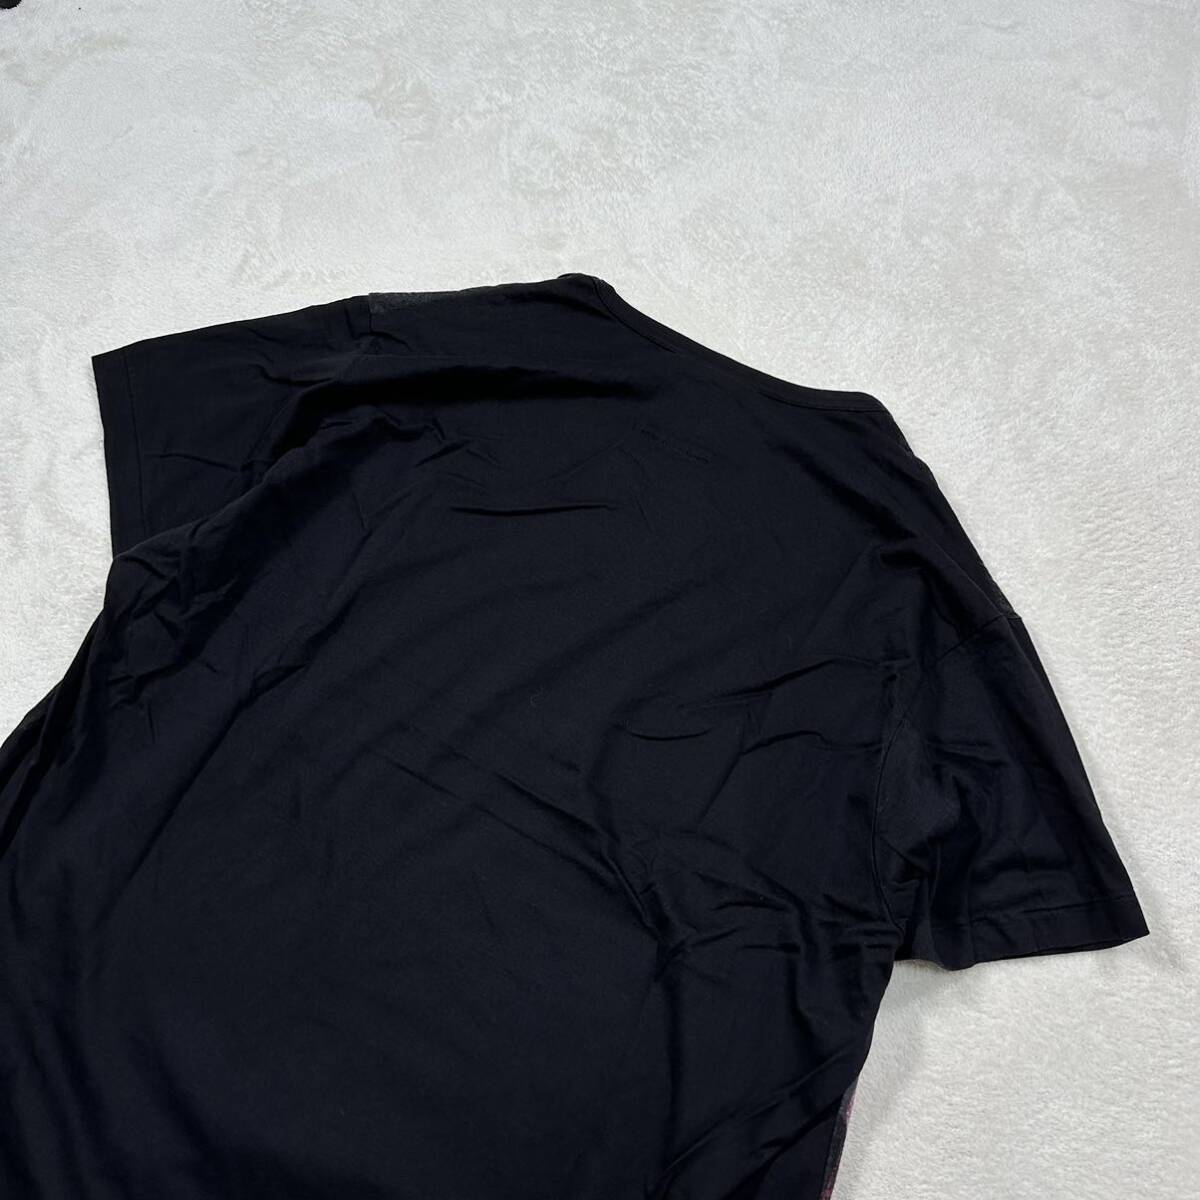 Yohji Yamamoto BLACK SCANDAL カットソー 3 ヨウジヤマモト 朝倉PT 赤顔半袖 プリント カットソー Tシャツ リヨセル70% コットン30%_画像10